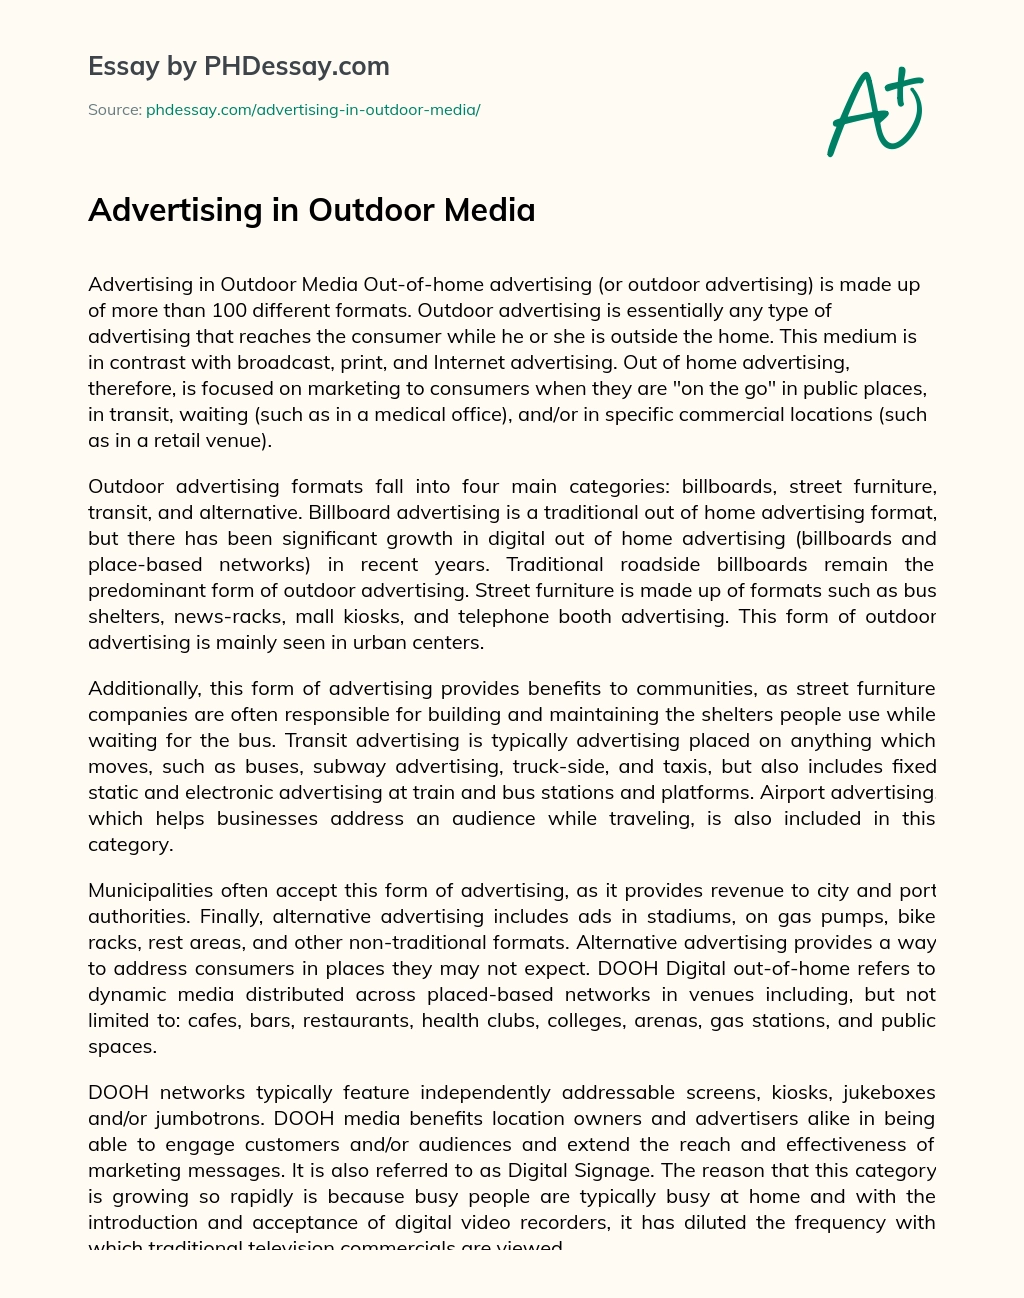 Advertising in Outdoor Media essay